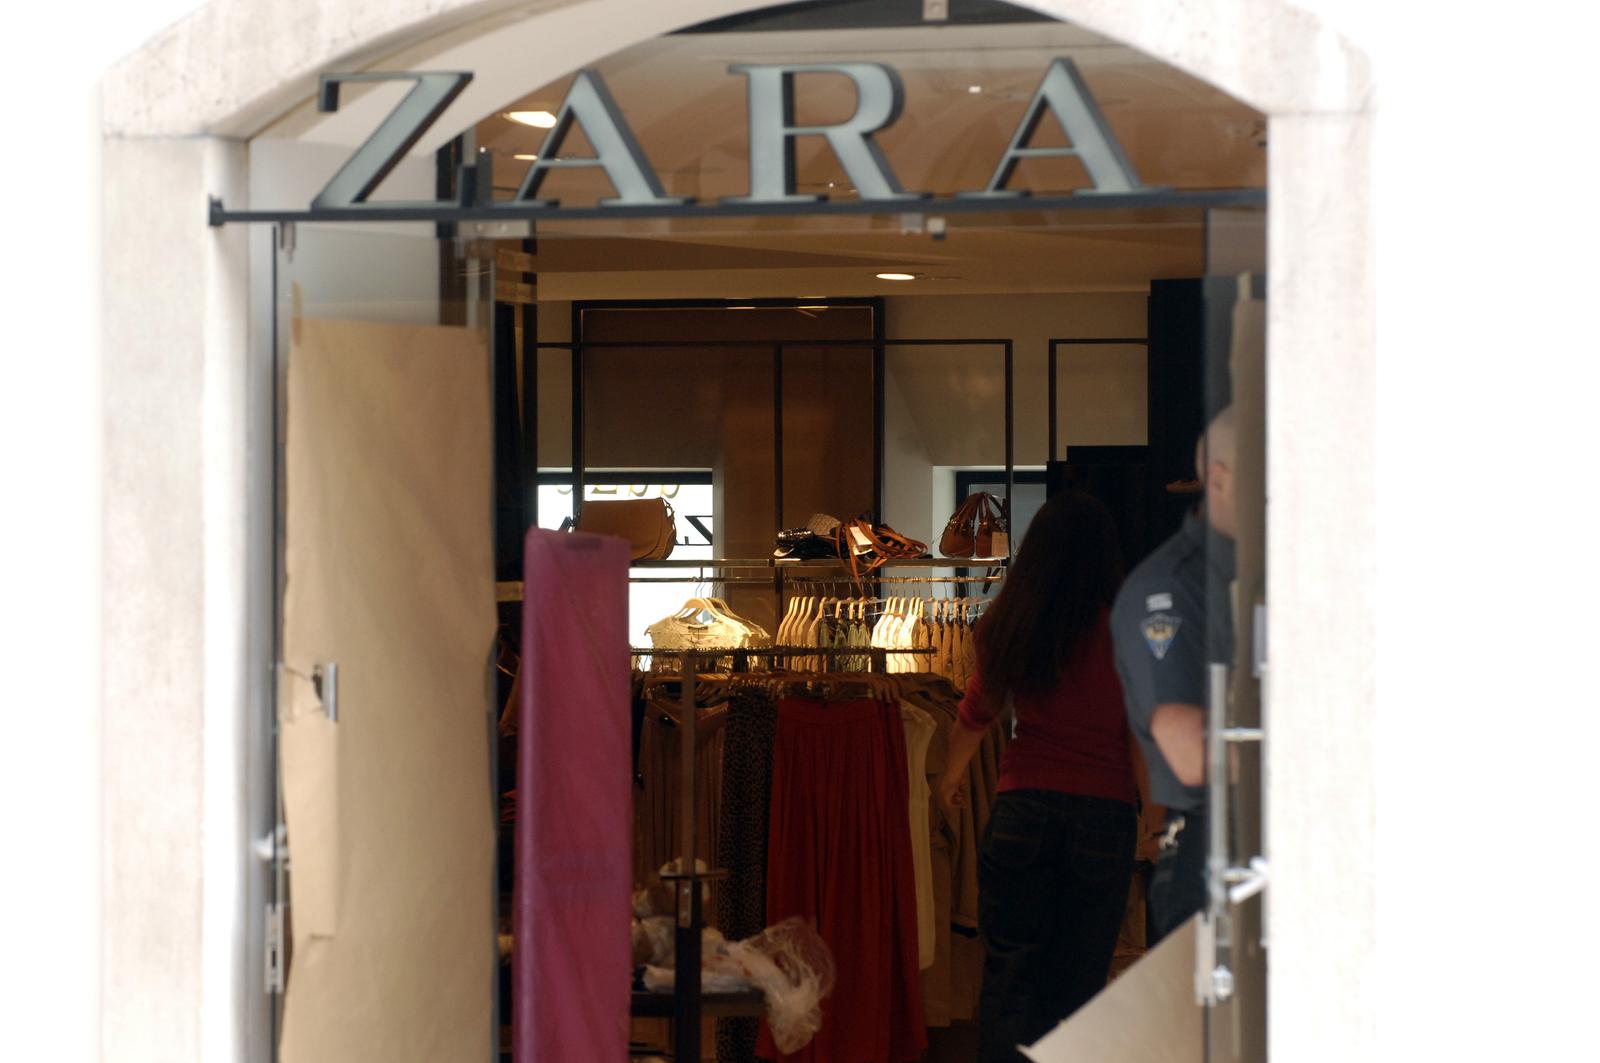 07.04.2011. Rijeka - U tijeku su posljednje pripreme za otvorenje trgovine Zara. rPhoto: Goran Kovacic/PIXSELL